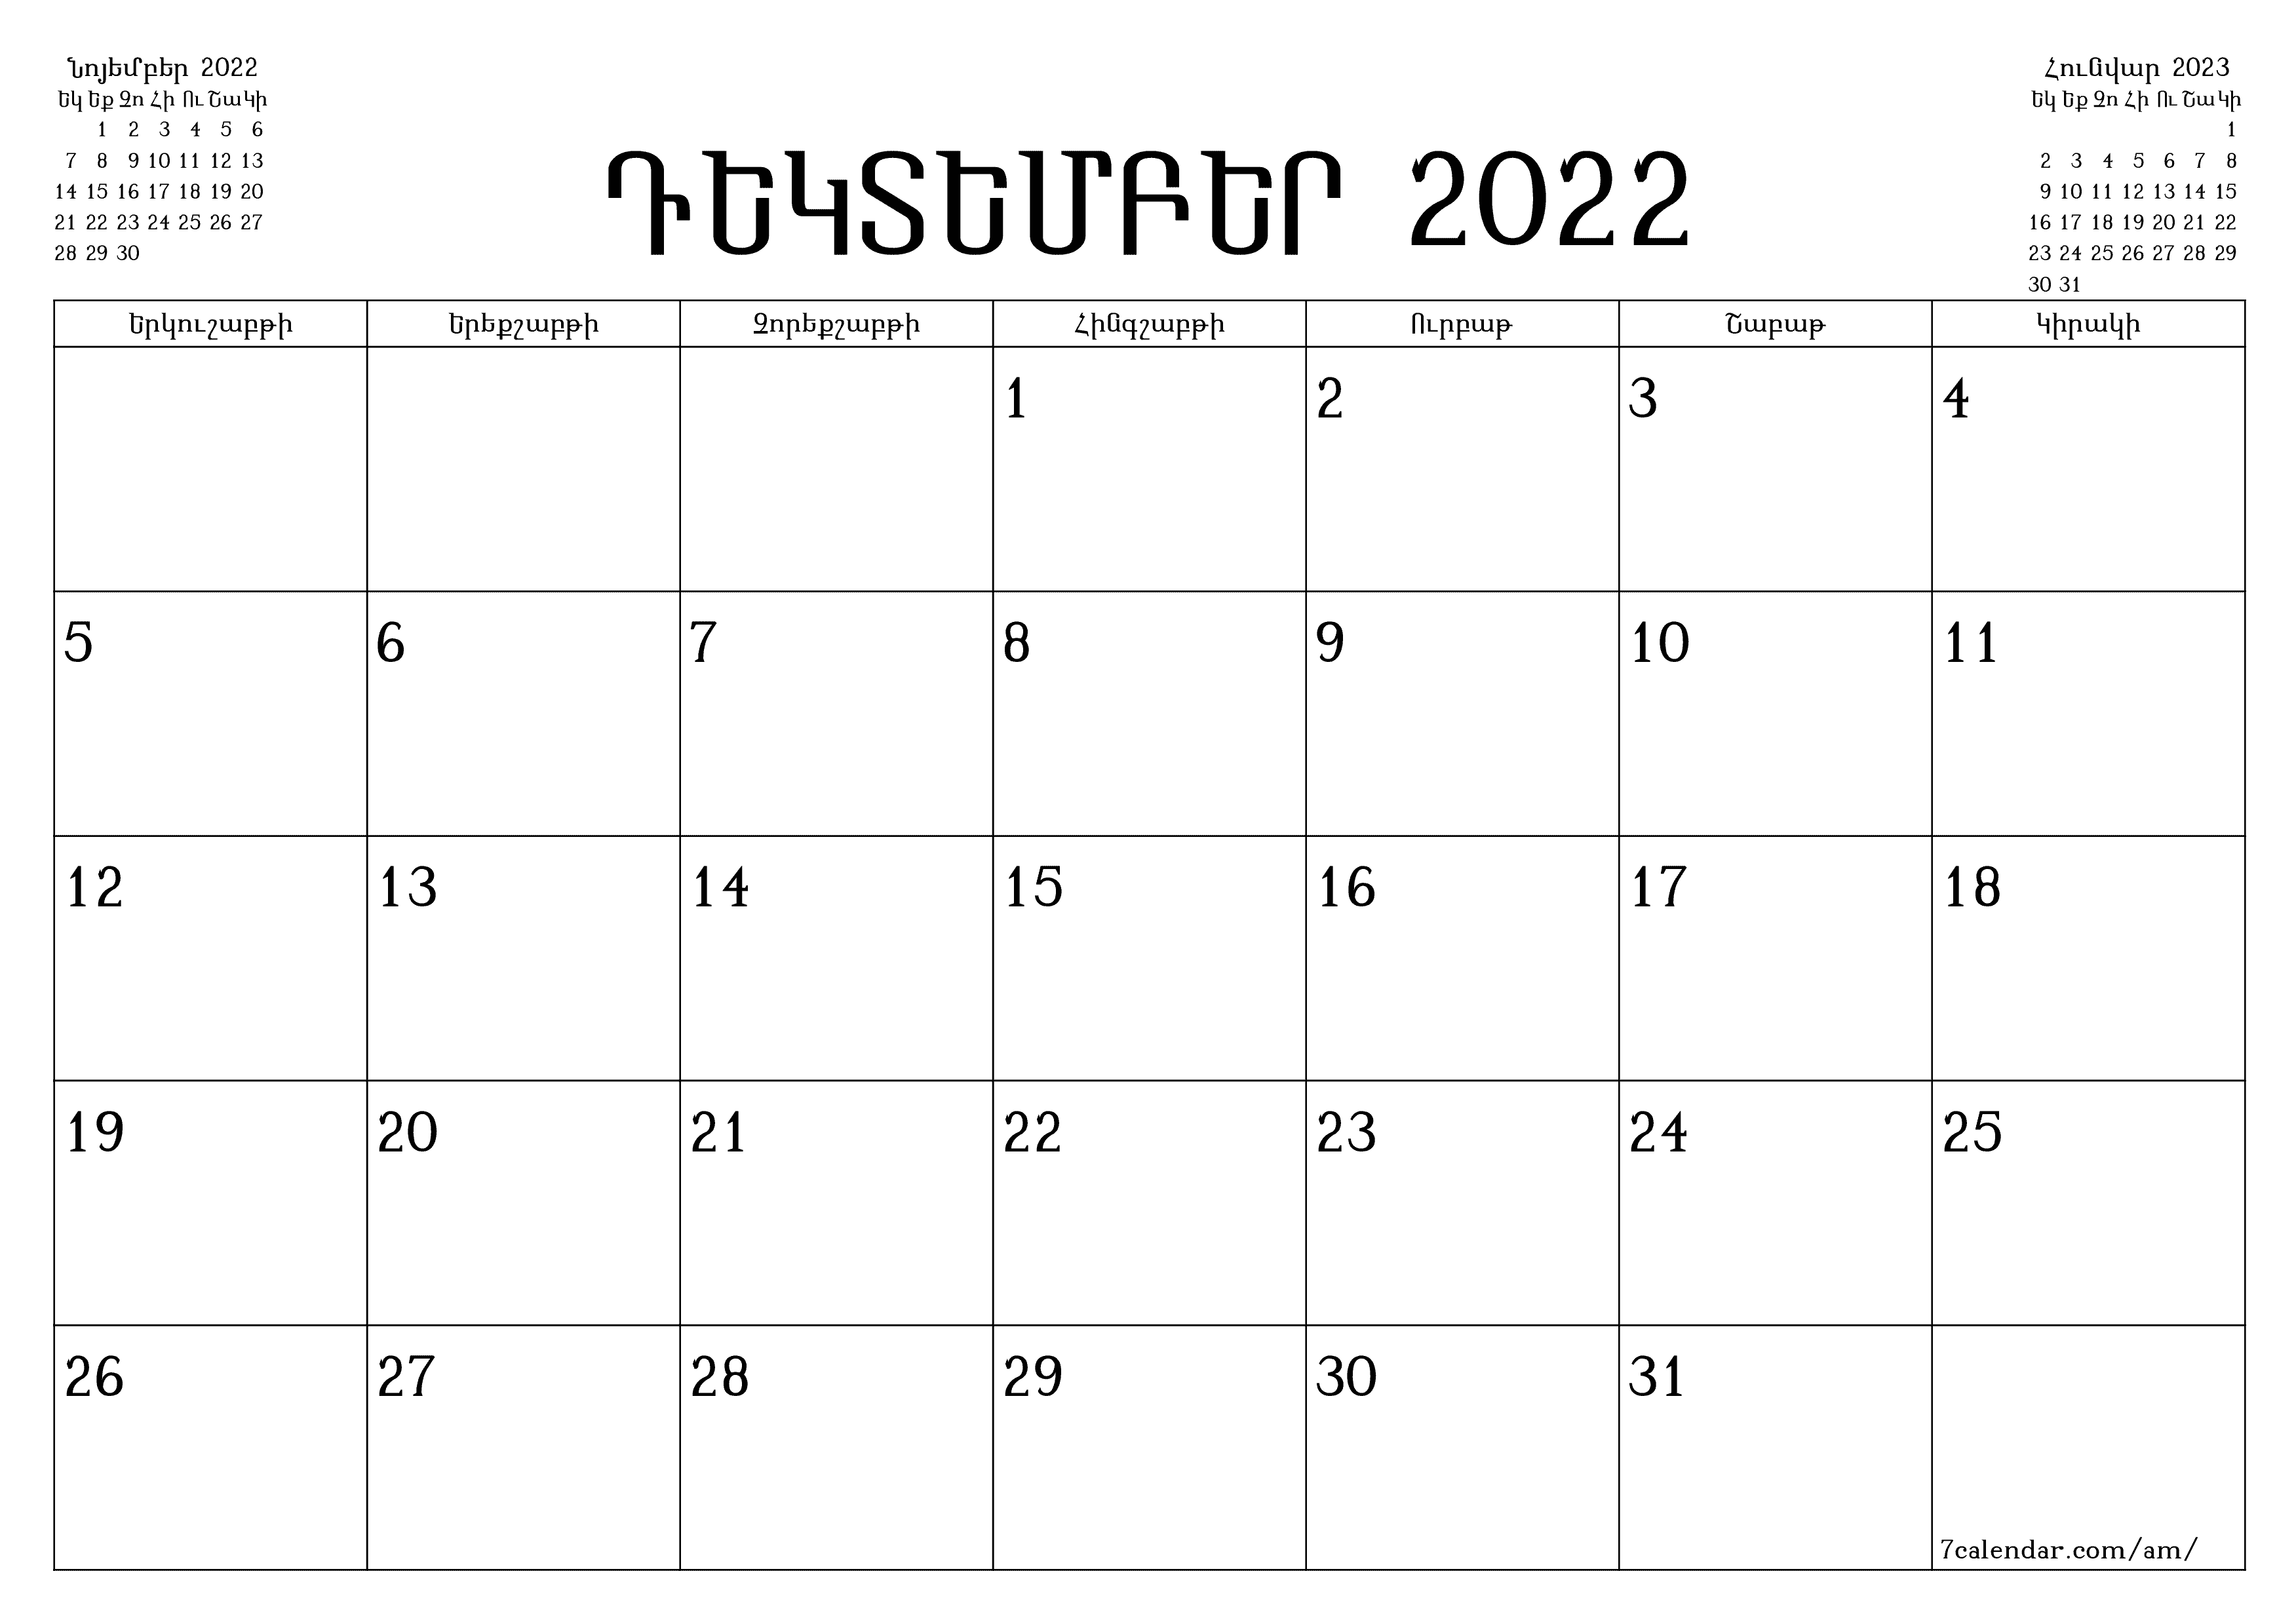 տպագրվող պատի ի ձևանմուշ անվճար հորիզոնական Ամսական պլանավորող օրացույց Դեկտեմբեր (Դեկ) 2022